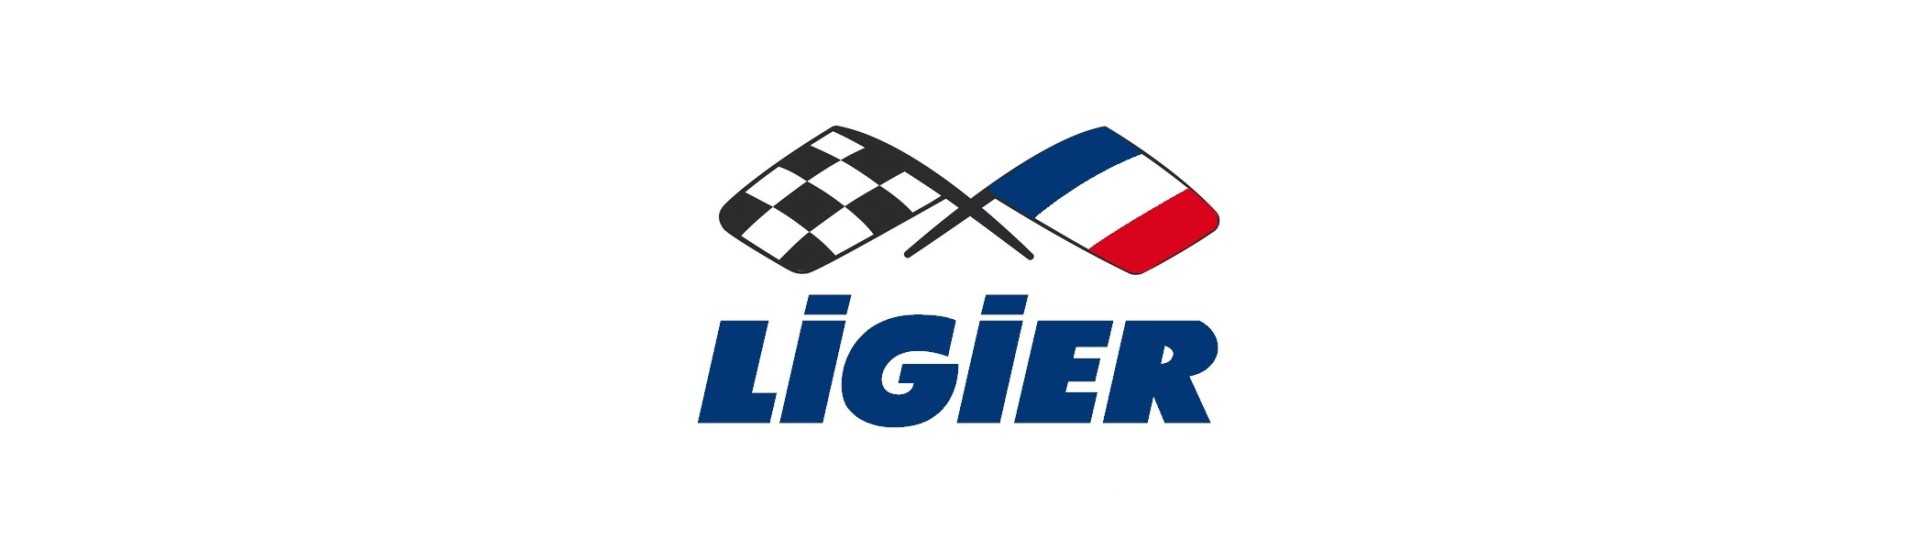 Relais / módulo de coche electrónico sin permiso Ligier